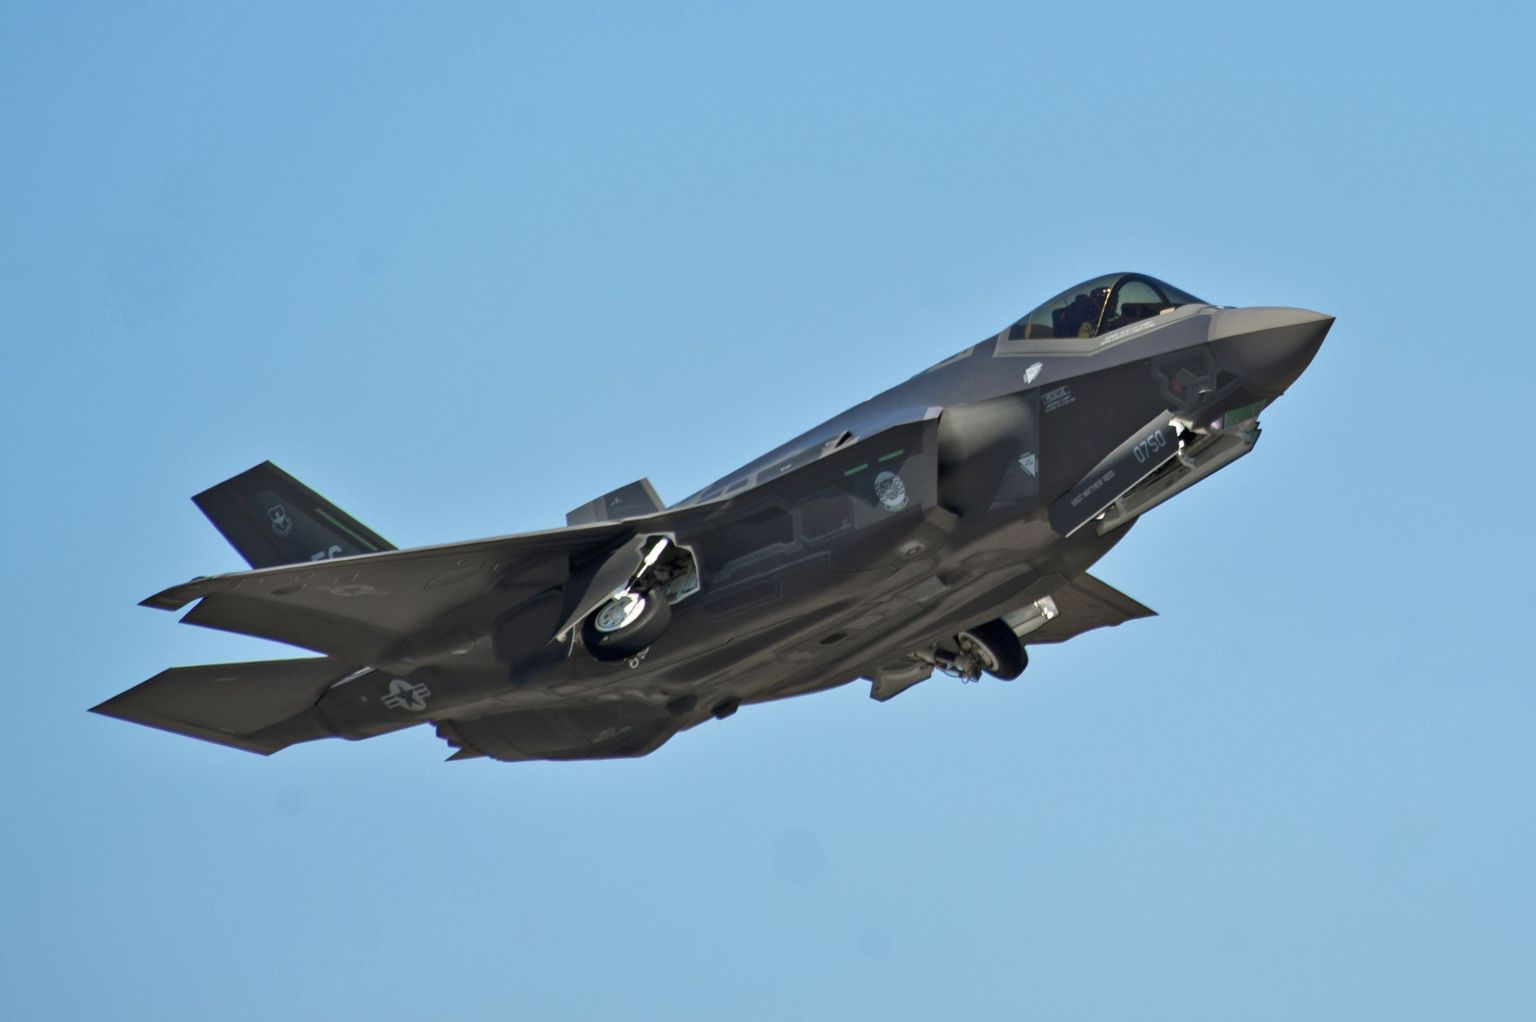 F-35A Lightning II Joint Strike tüüpi hävitaja, millest on saanud maailma kulukaim militaarprojekt.